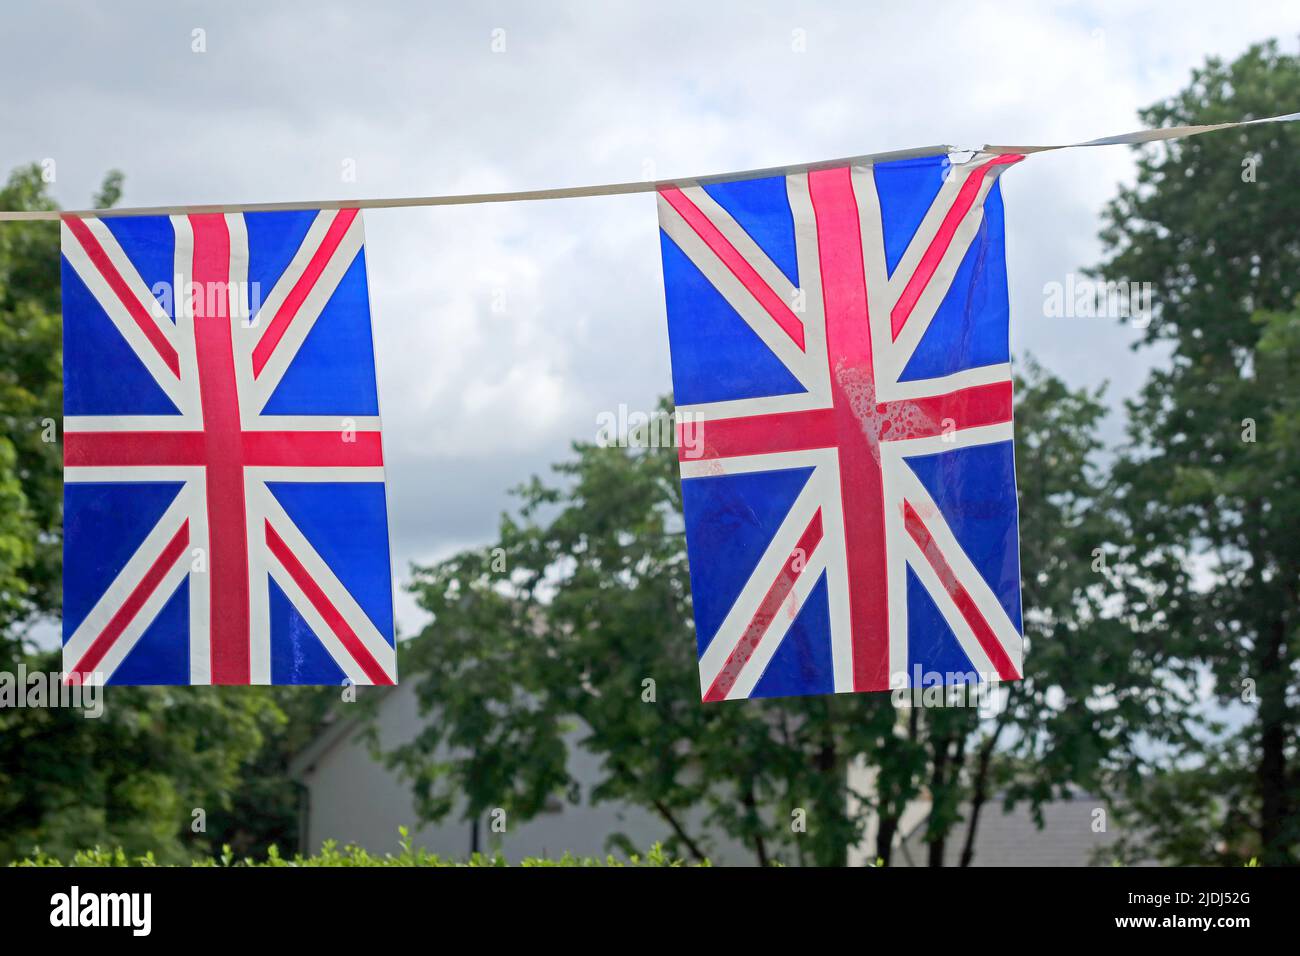 Deux drapeaux syndicaux - événements royaux, Jubllee, décès de la reine Elizabeth, couronnement du roi Charles III Banque D'Images